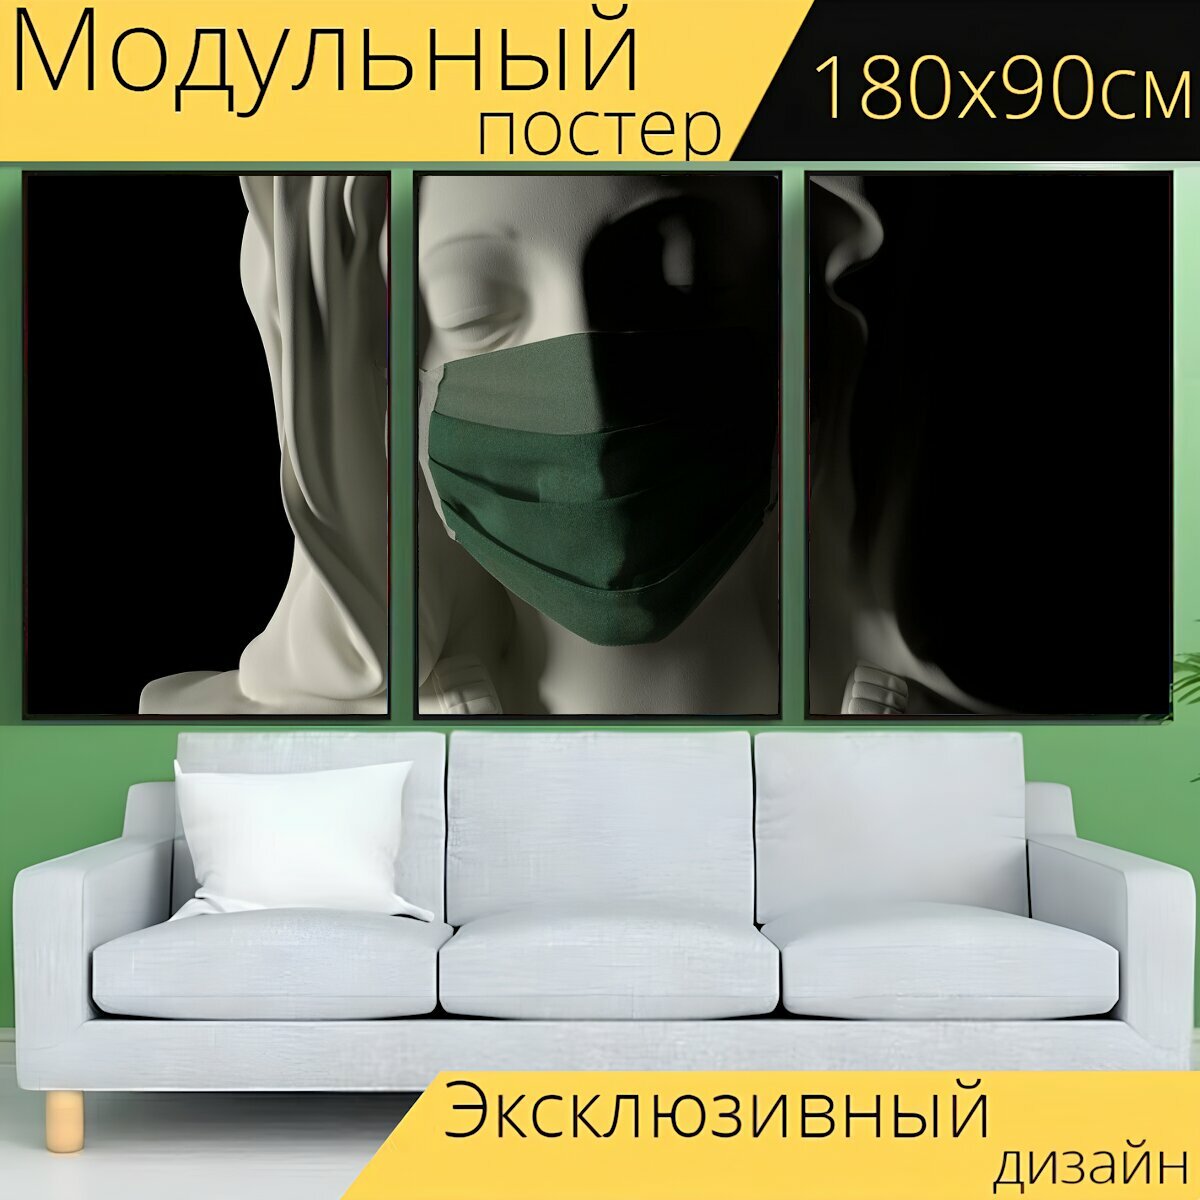 Модульный постер "Статуя, маска, чернить" 180 x 90 см. для интерьера